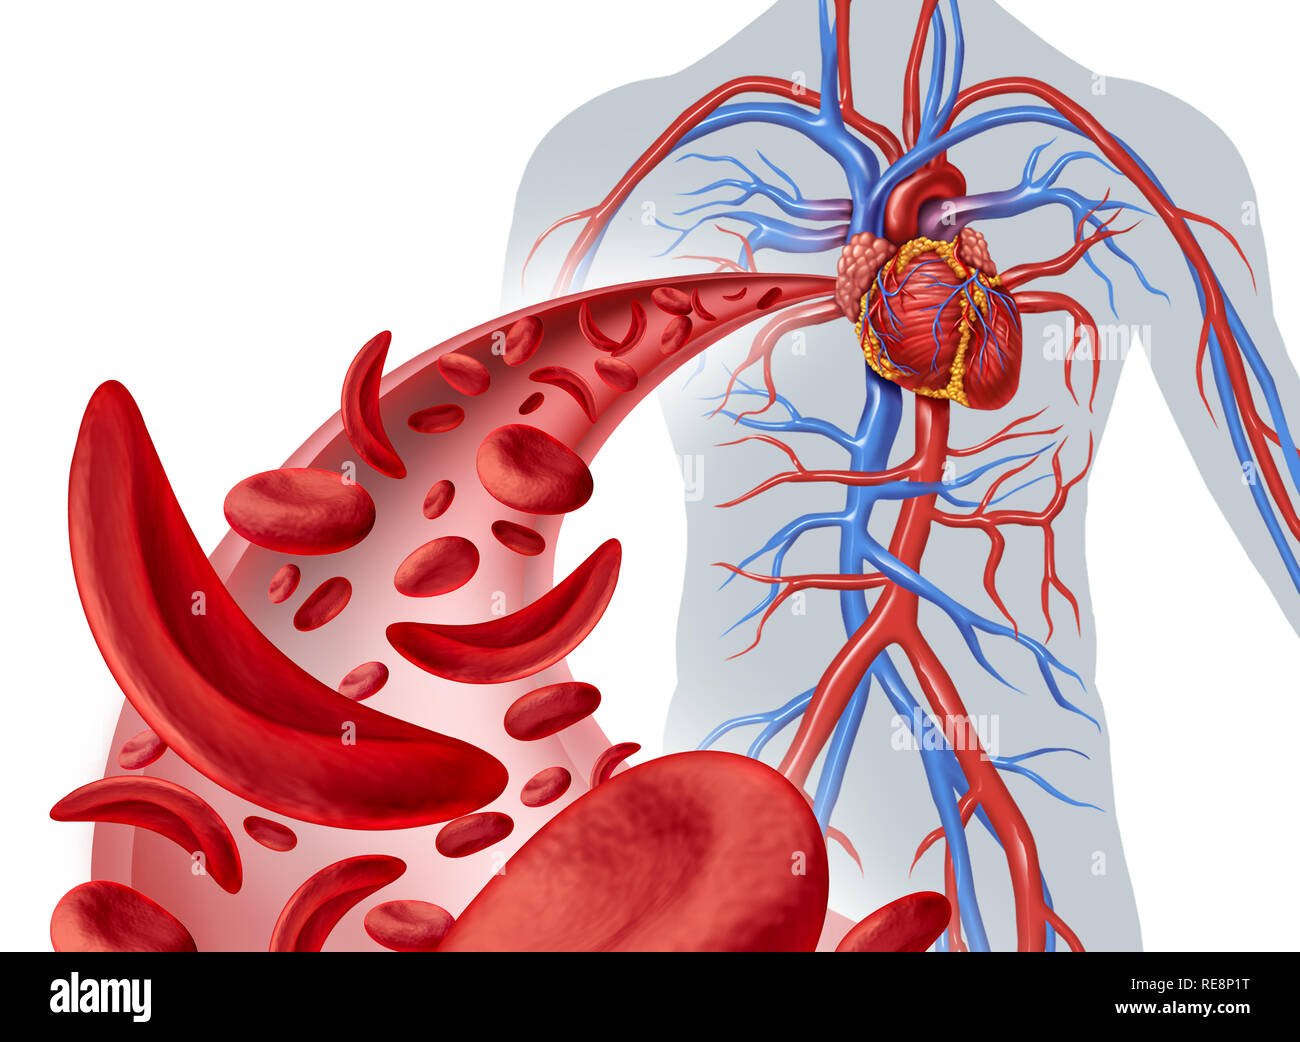 La falce cella circolazione cardiaca e anemia come una malattia con normale e di emoglobina anormale in una arteria umana anatomia con cuore cardiovascolari. Foto Stock